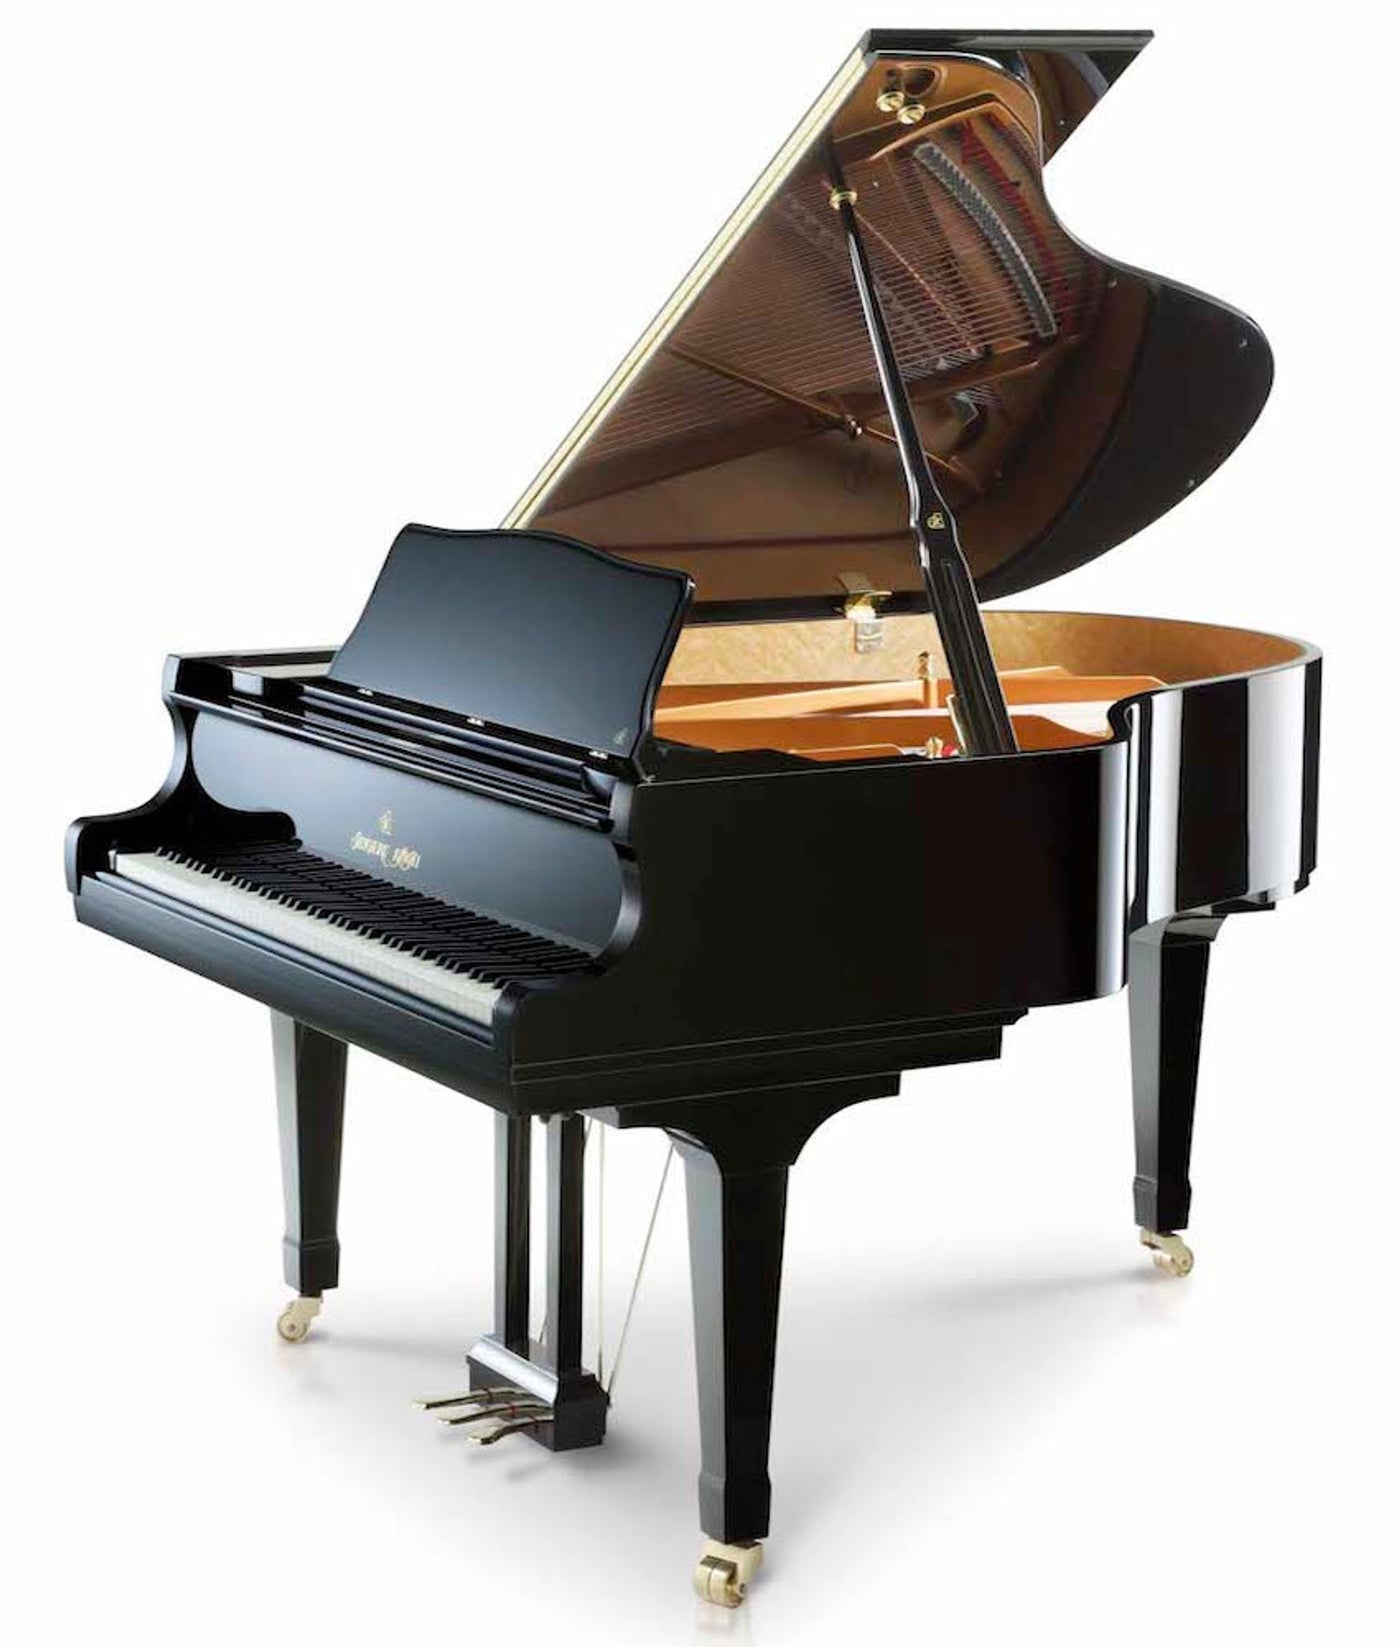 Shigeru Kawai 5'11" SK-2 Salon Grand Piano | Brown Sapele Mahogany Polish | New